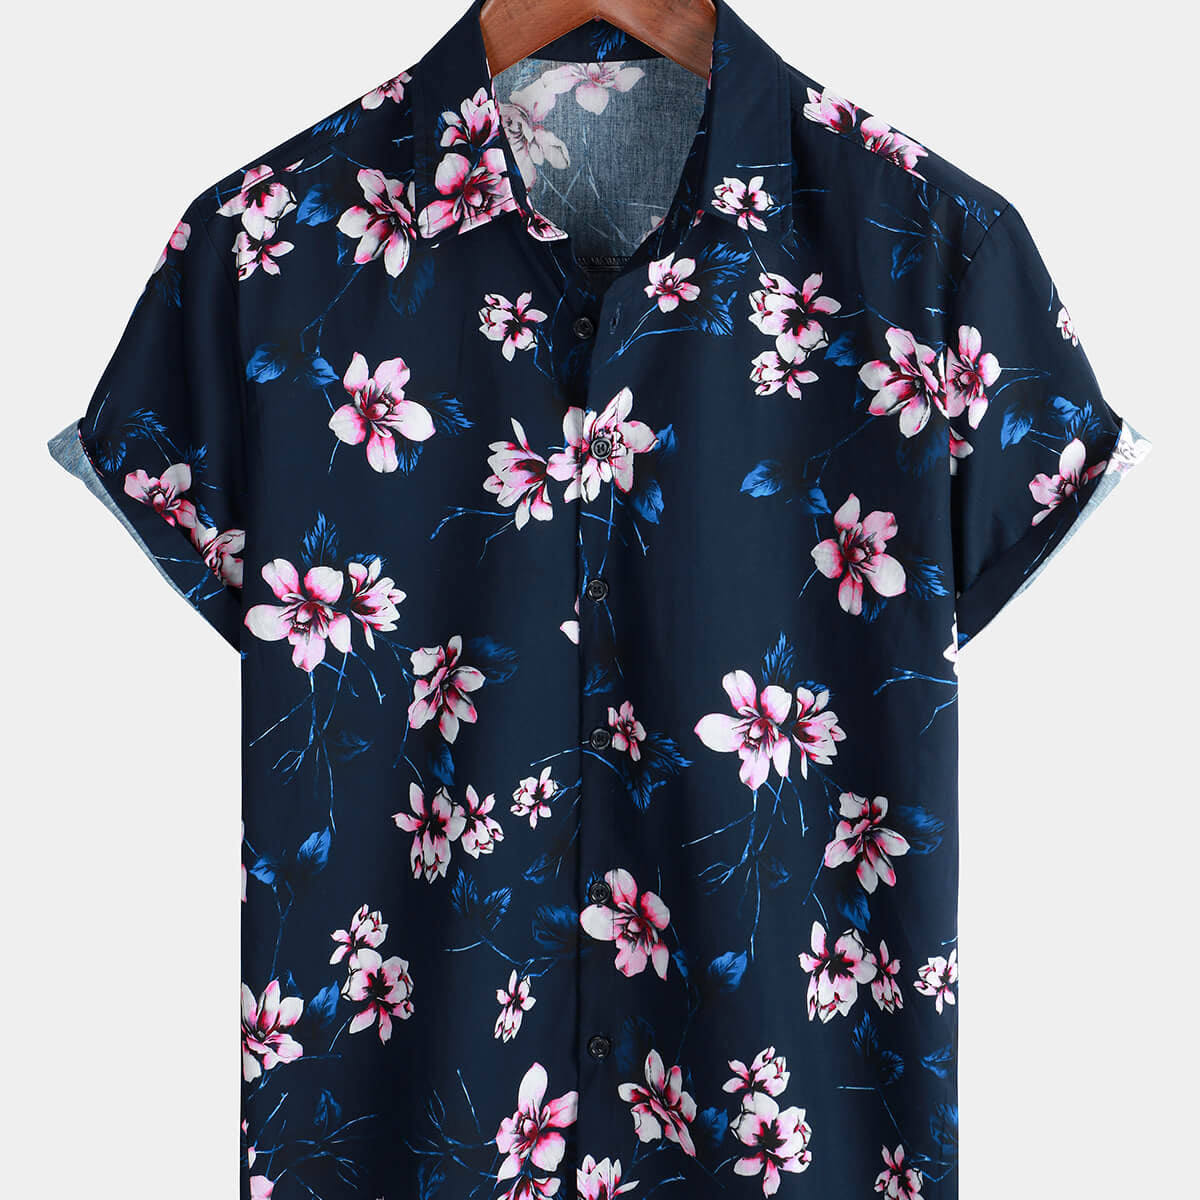 Men's Short Sleeve Button Up Floral 100% Cotton Summer Shirt